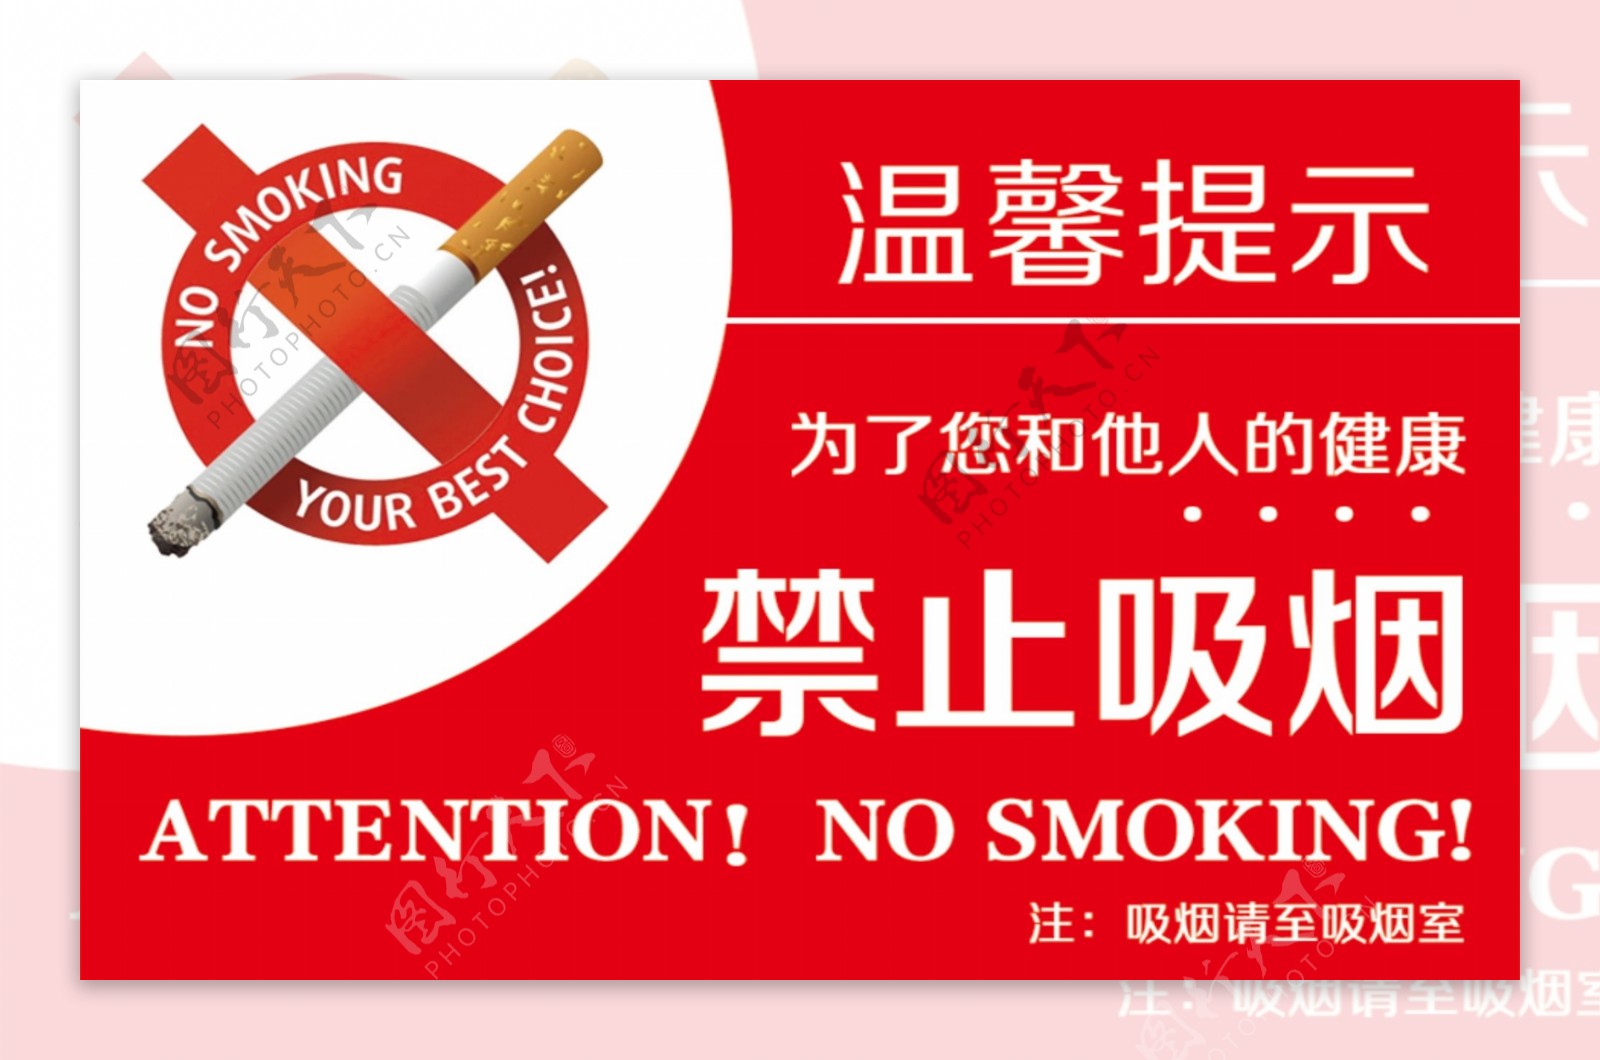 高端大气的禁止吸烟温馨提示卡片